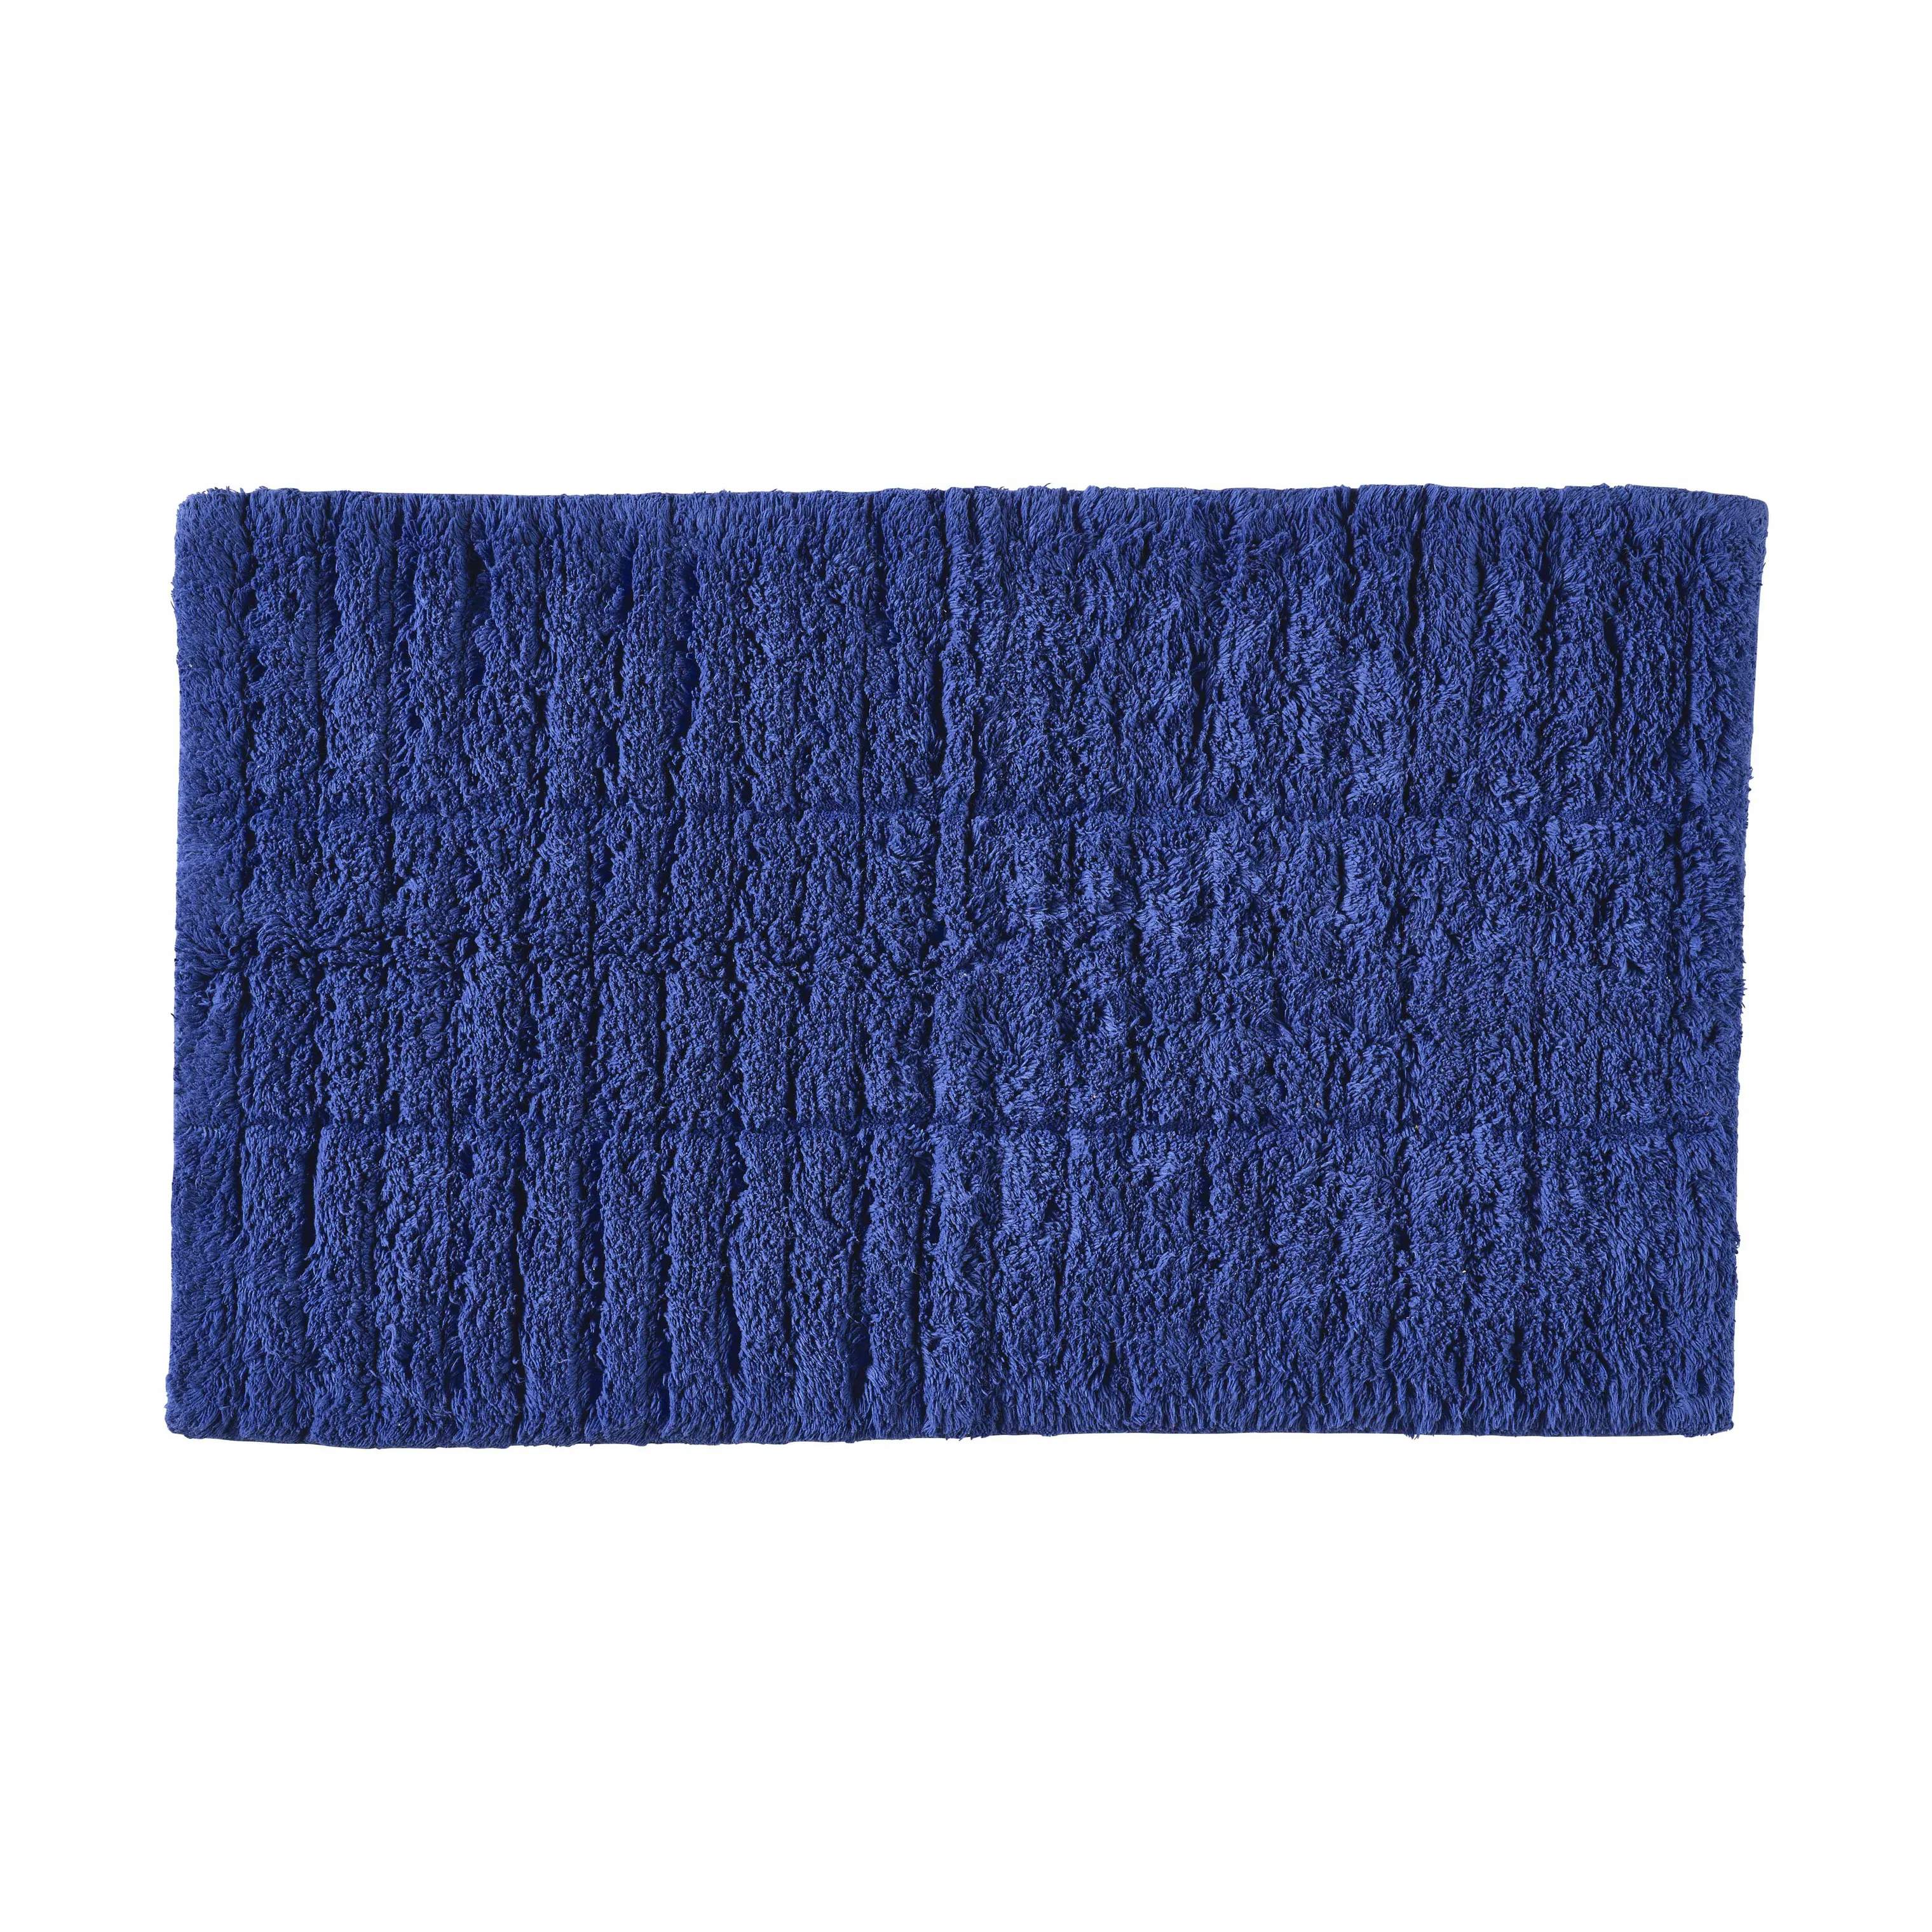 Tiles Bademåtte, indigo blue, large